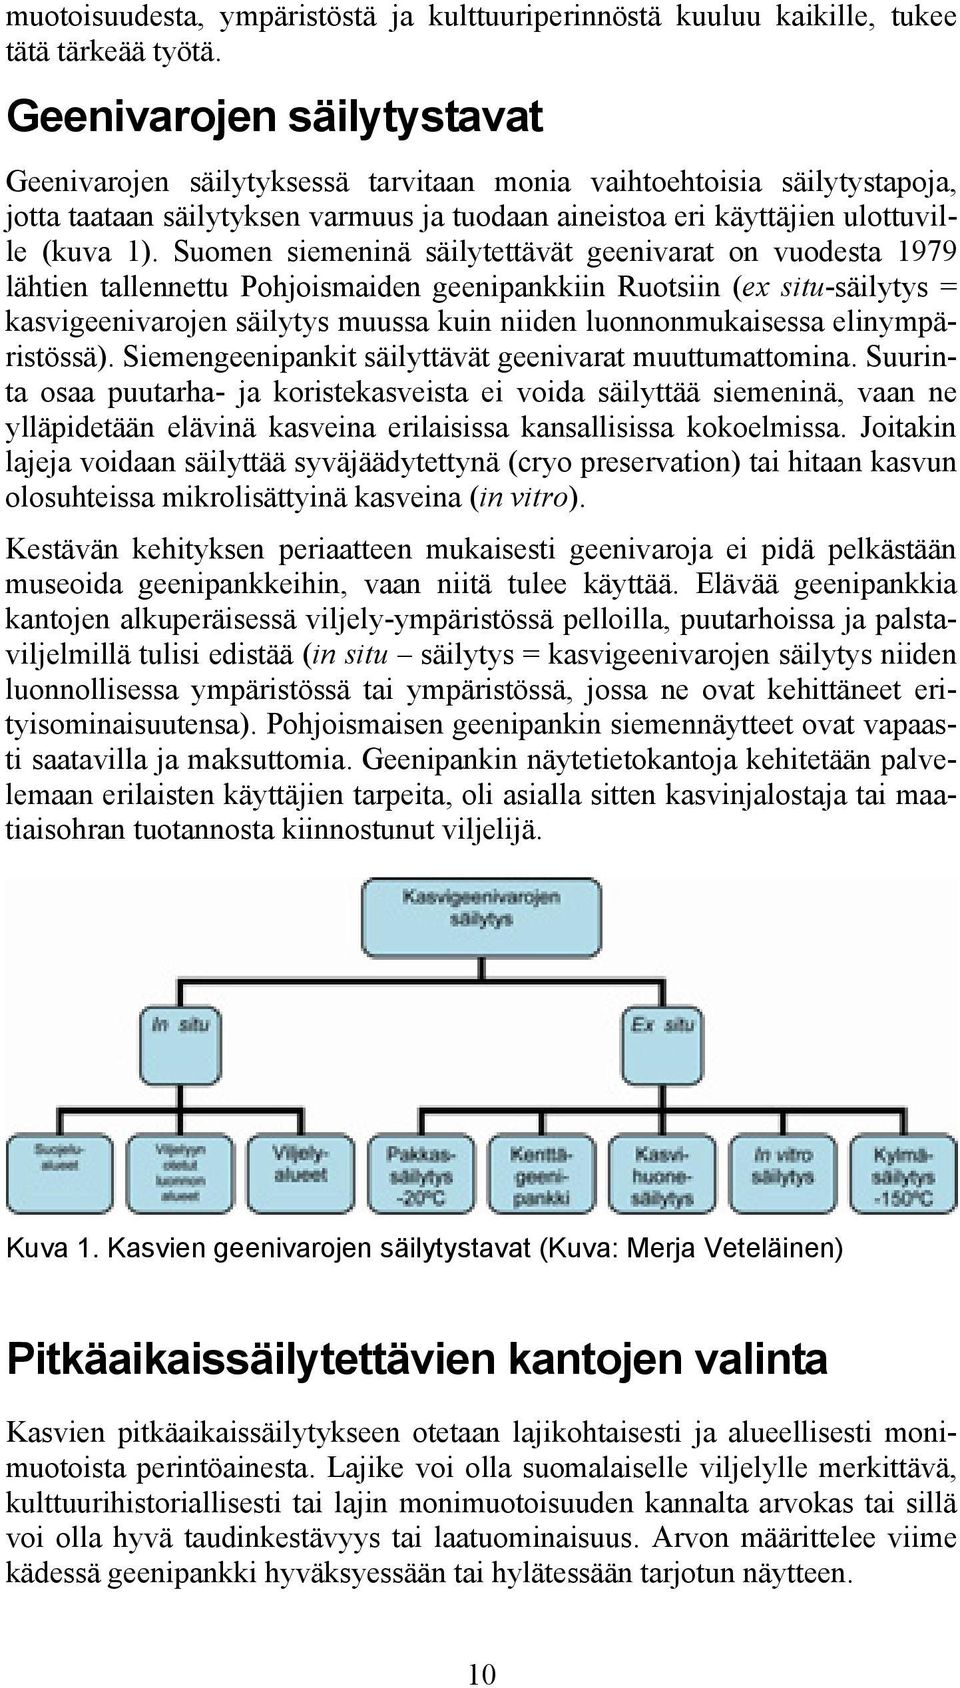 Suomen siemeninä säilytettävät geenivarat on vuodesta 1979 lähtien tallennettu Pohjoismaiden geenipankkiin Ruotsiin (ex situ-säilytys = kasvigeenivarojen säilytys muussa kuin niiden luonnonmukaisessa